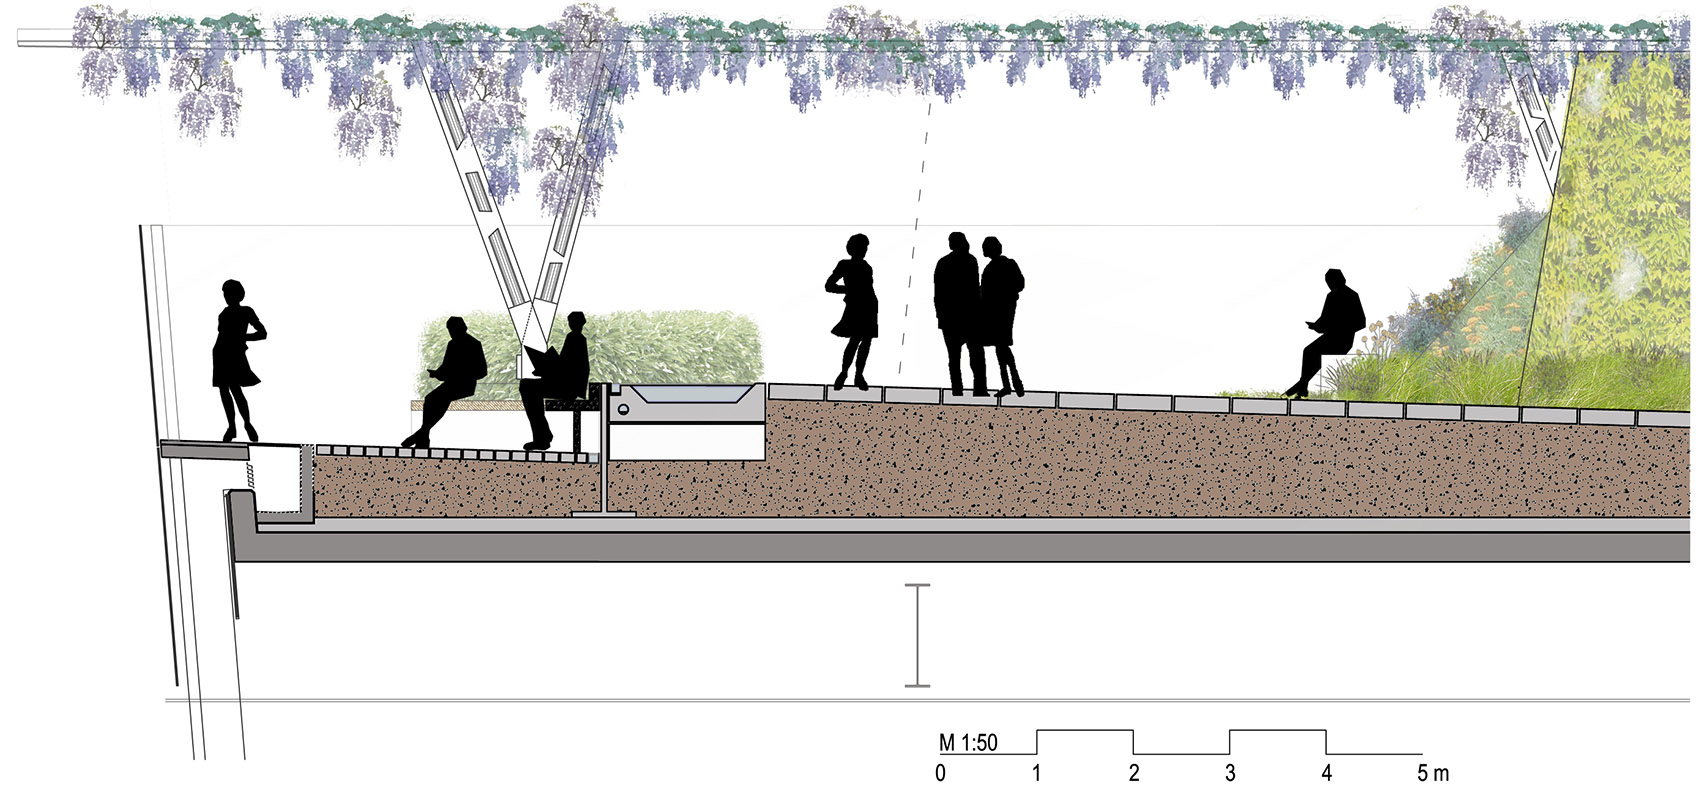 芬彻奇街120号屋顶花园，伦敦/伦敦市内最大的公共屋顶花园空间-50